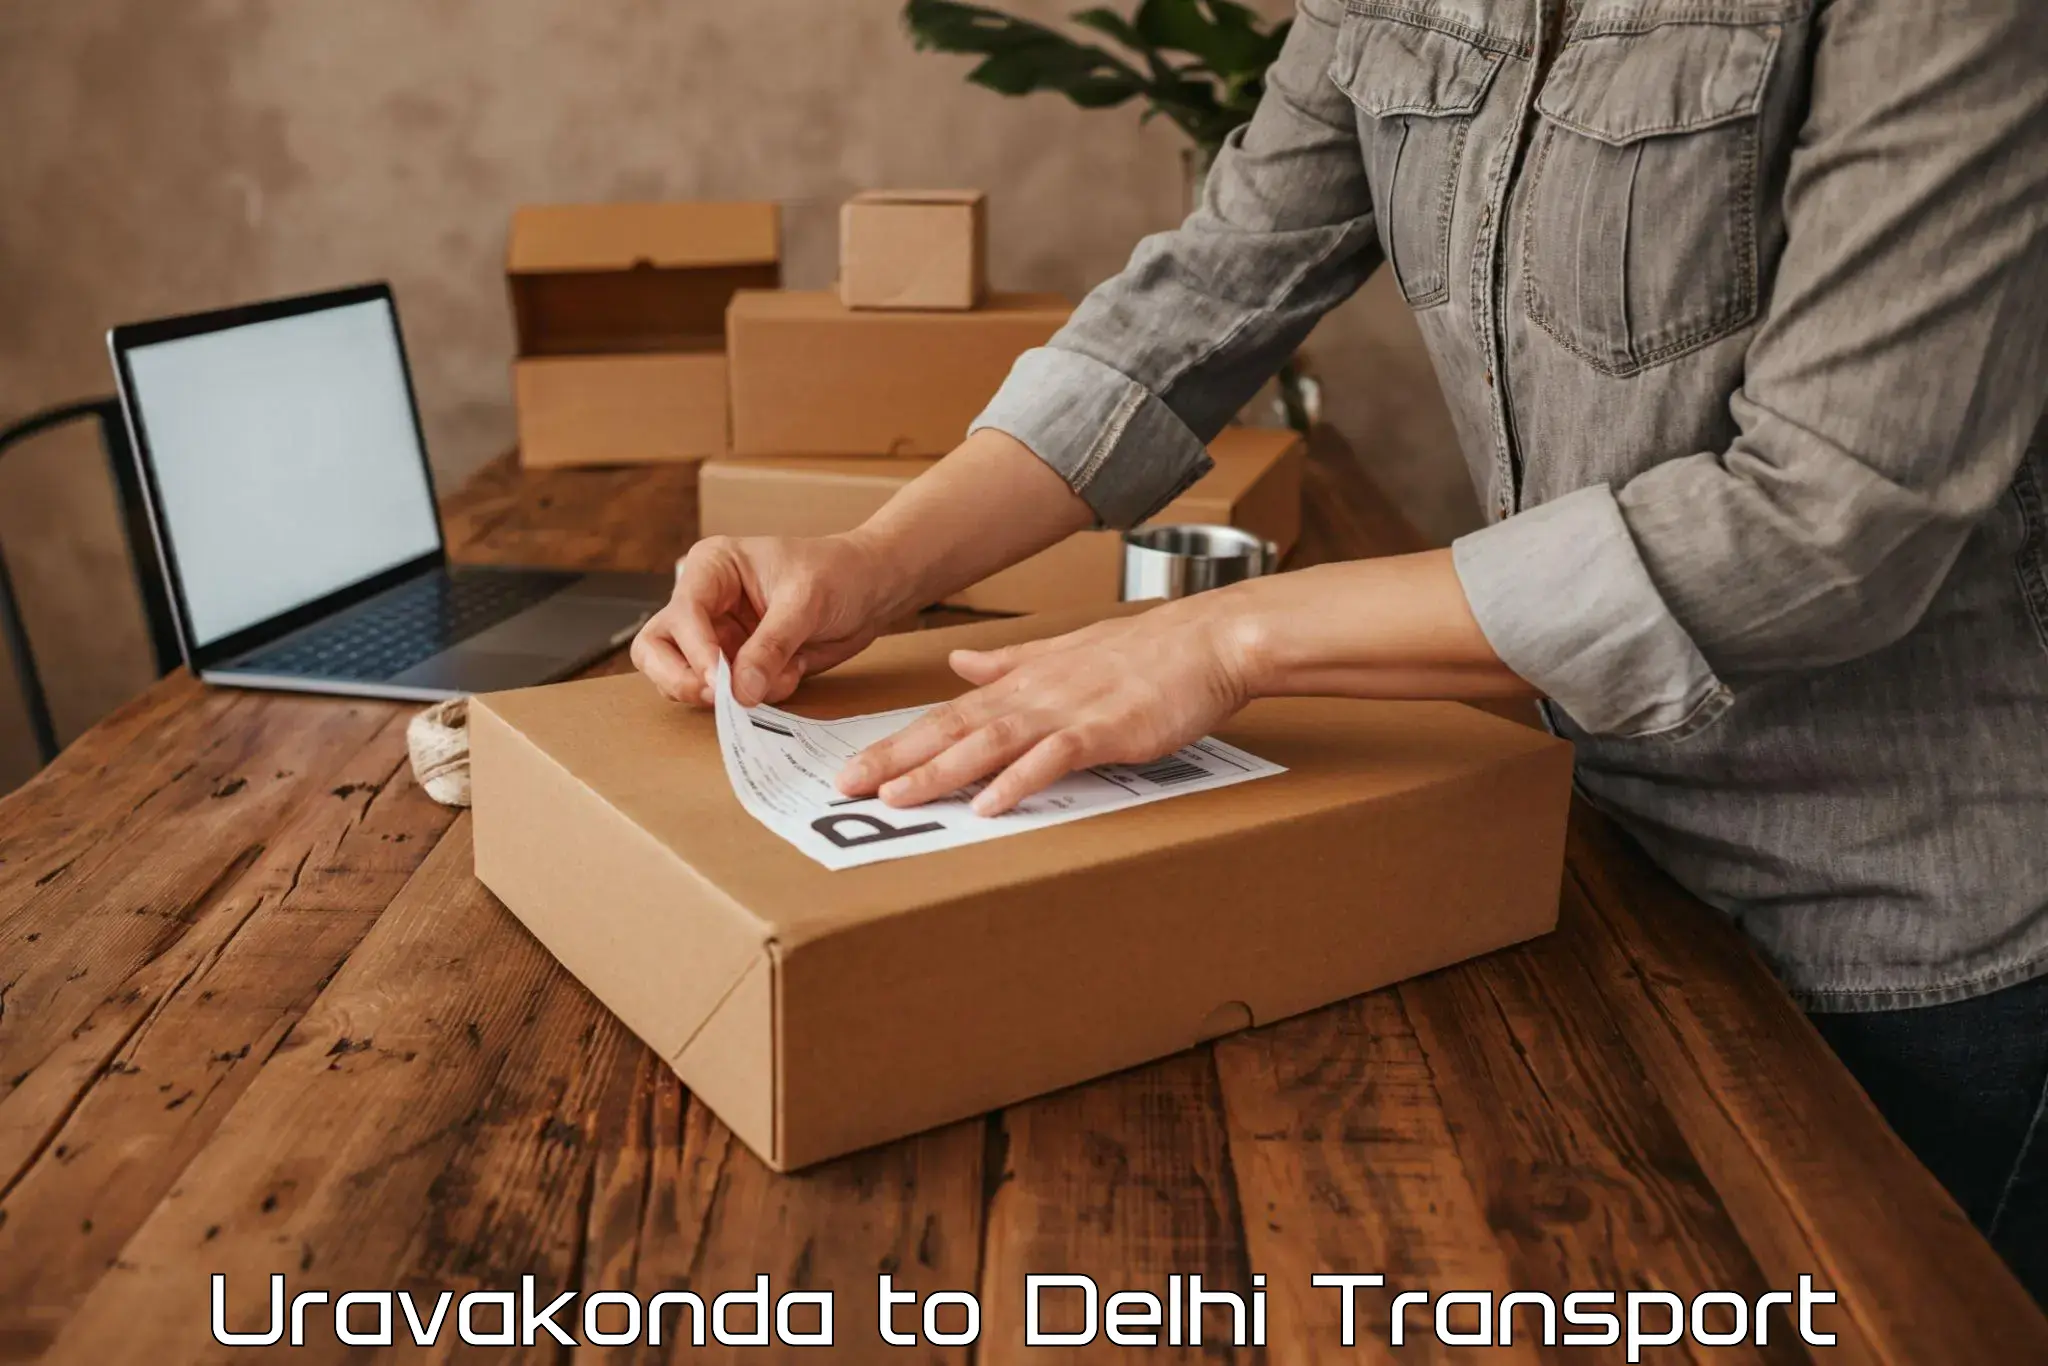 Online transport service Uravakonda to Guru Gobind Singh Indraprastha University New Delhi